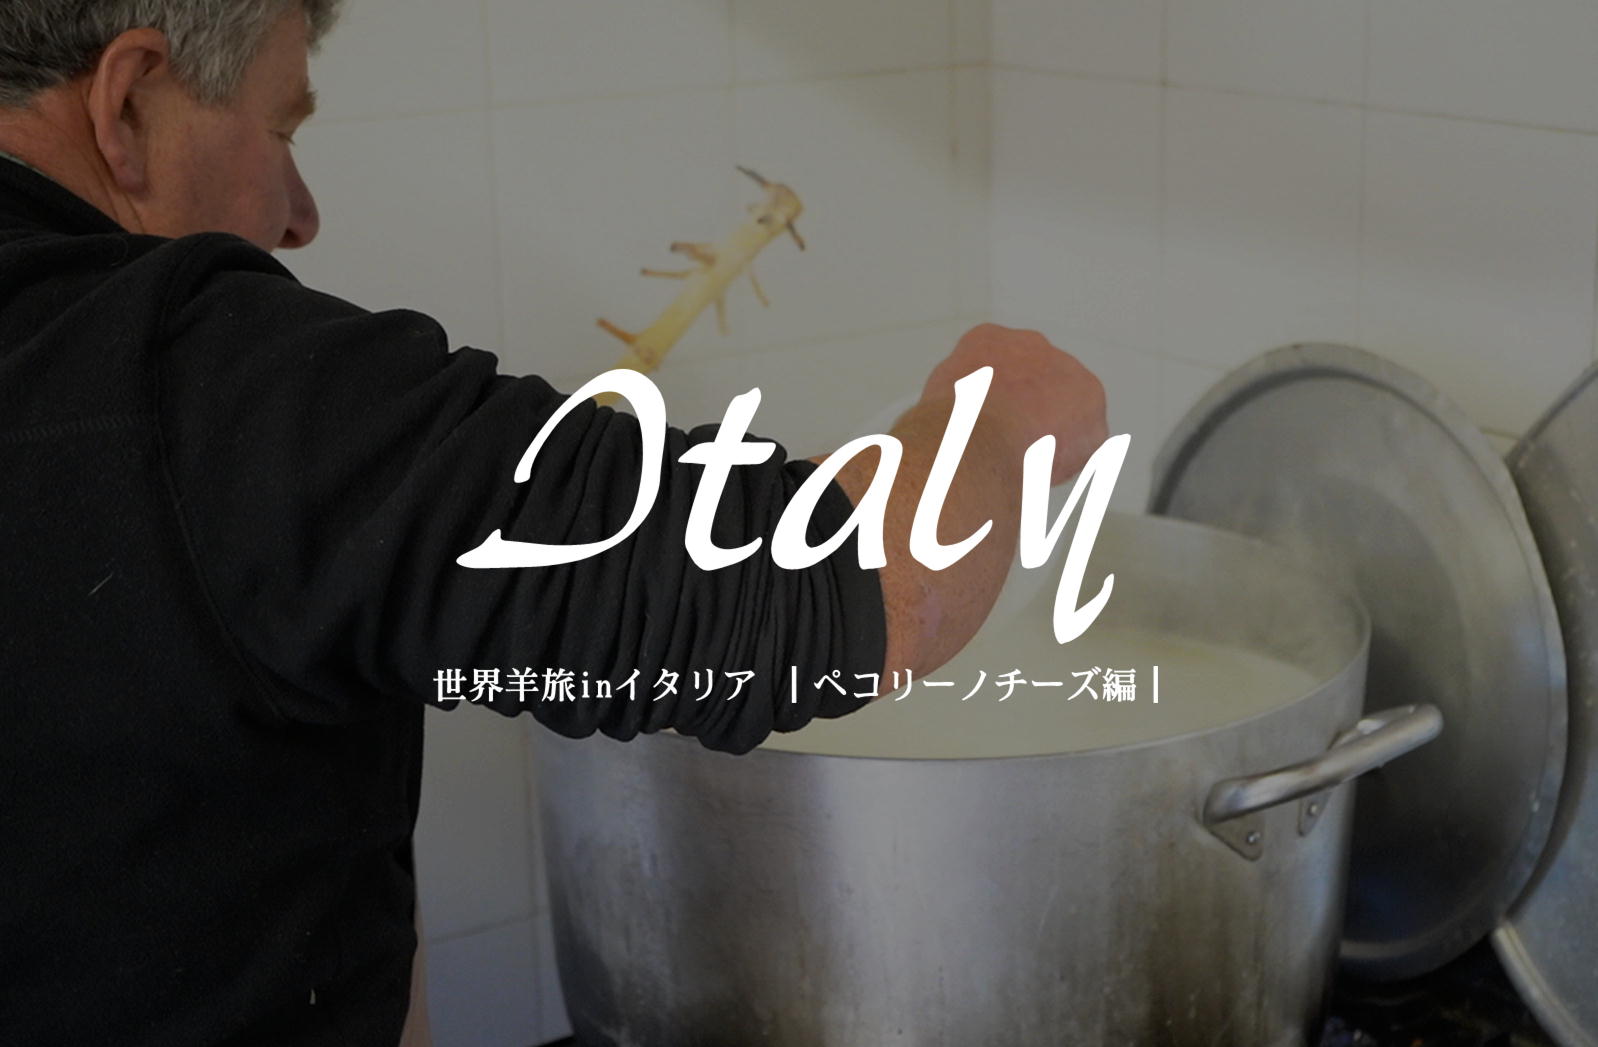 伝統製法の羊乳チーズ【イタリア/プラトヴェッキオ・スティーア】